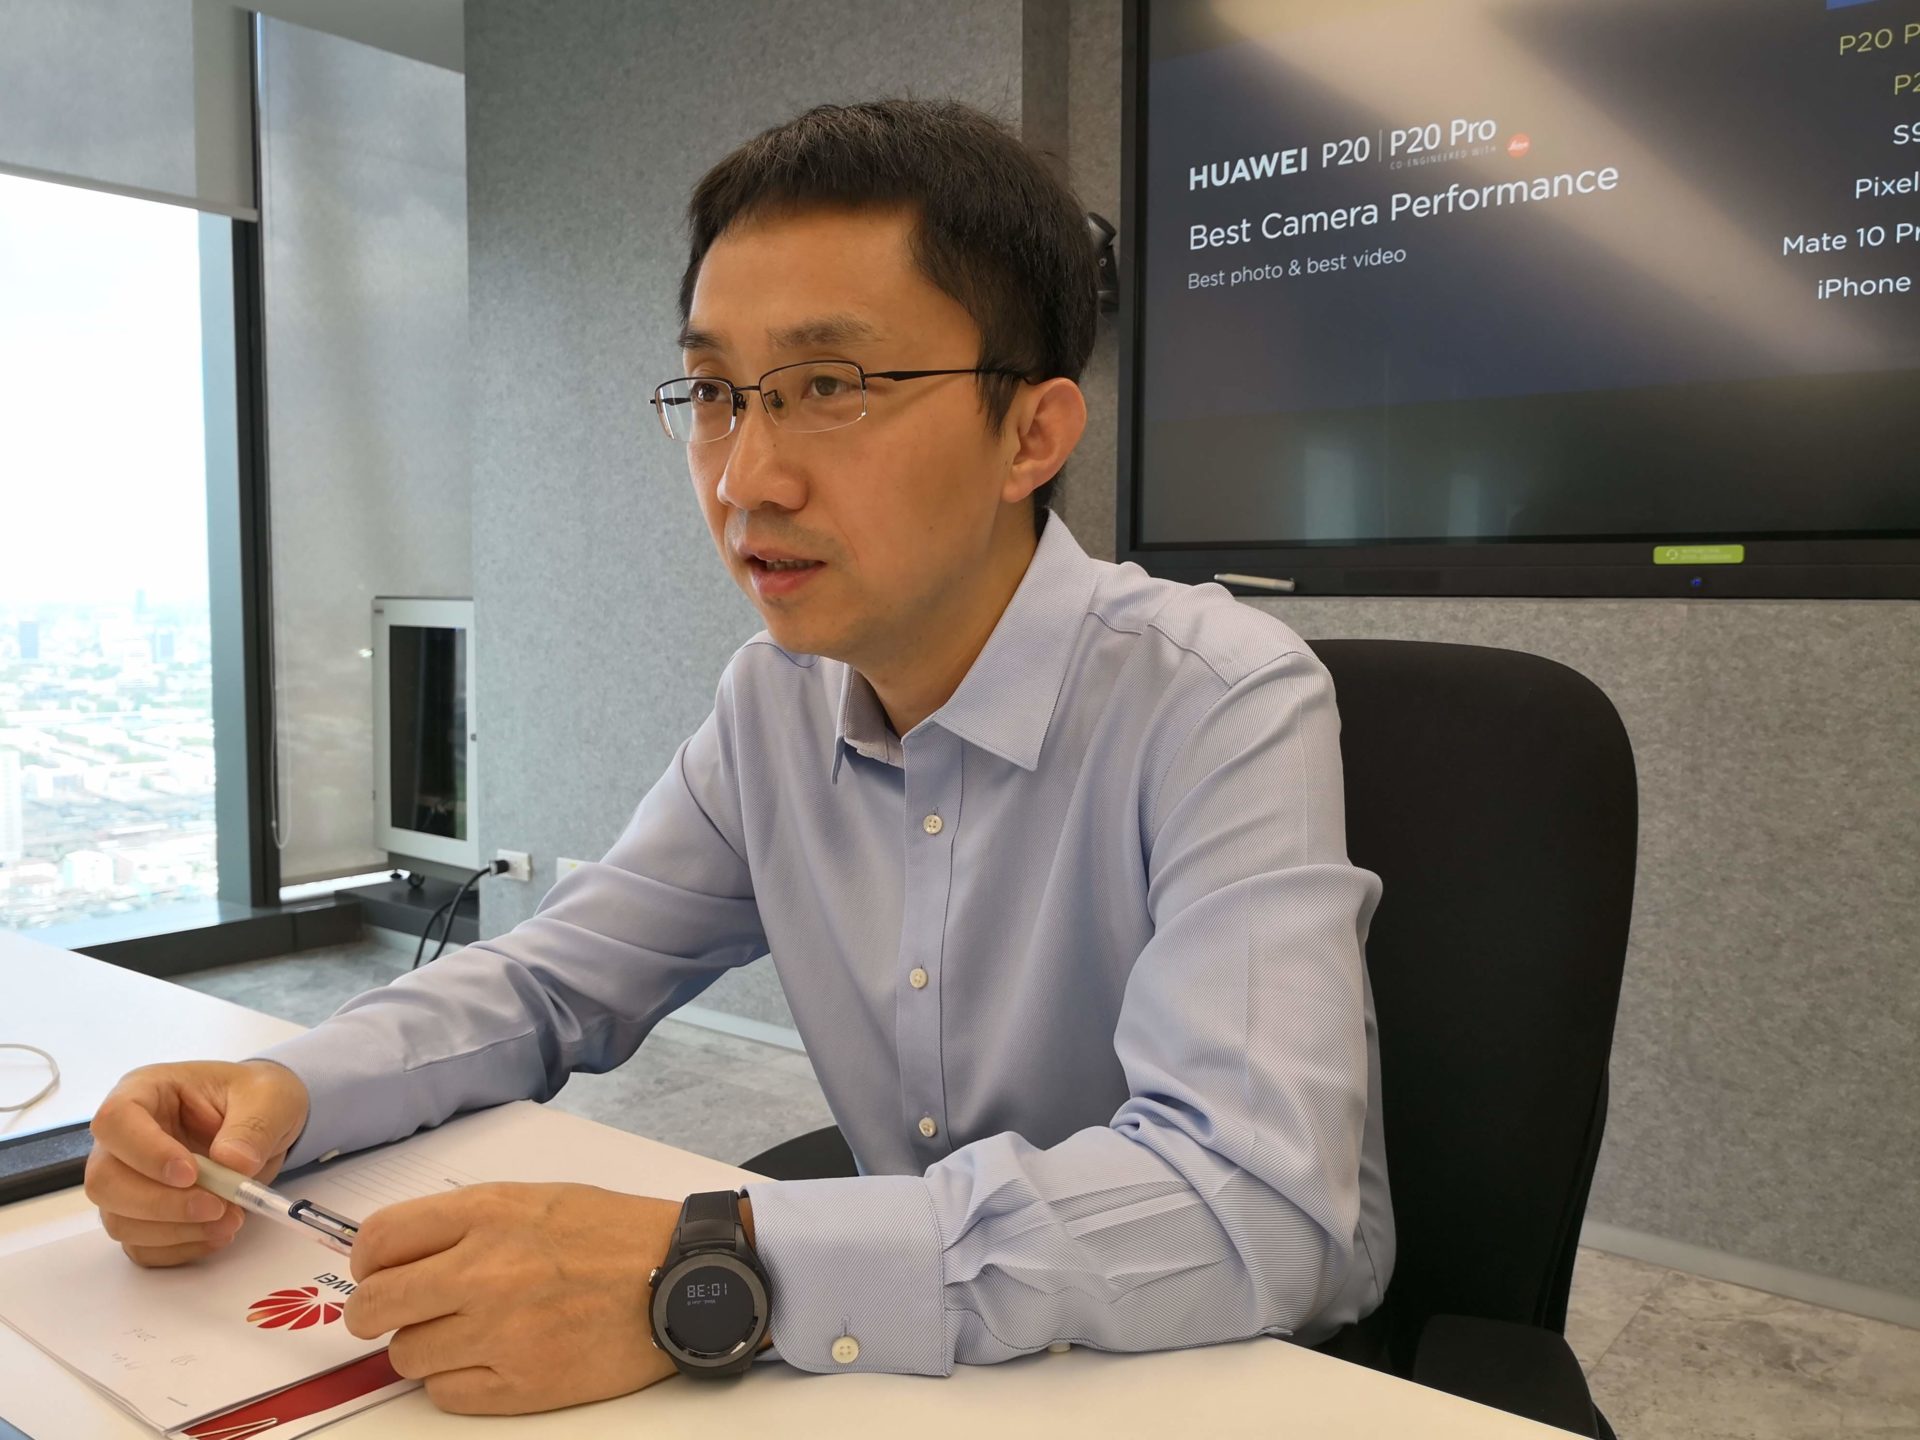 สัมภาษณ์บอสใหญ่ด้านสมาร์ทโฟนของ Huawei : ทำไมต้อง SuperCharge, อนาคตของ Mate จะเป็นยังไง?